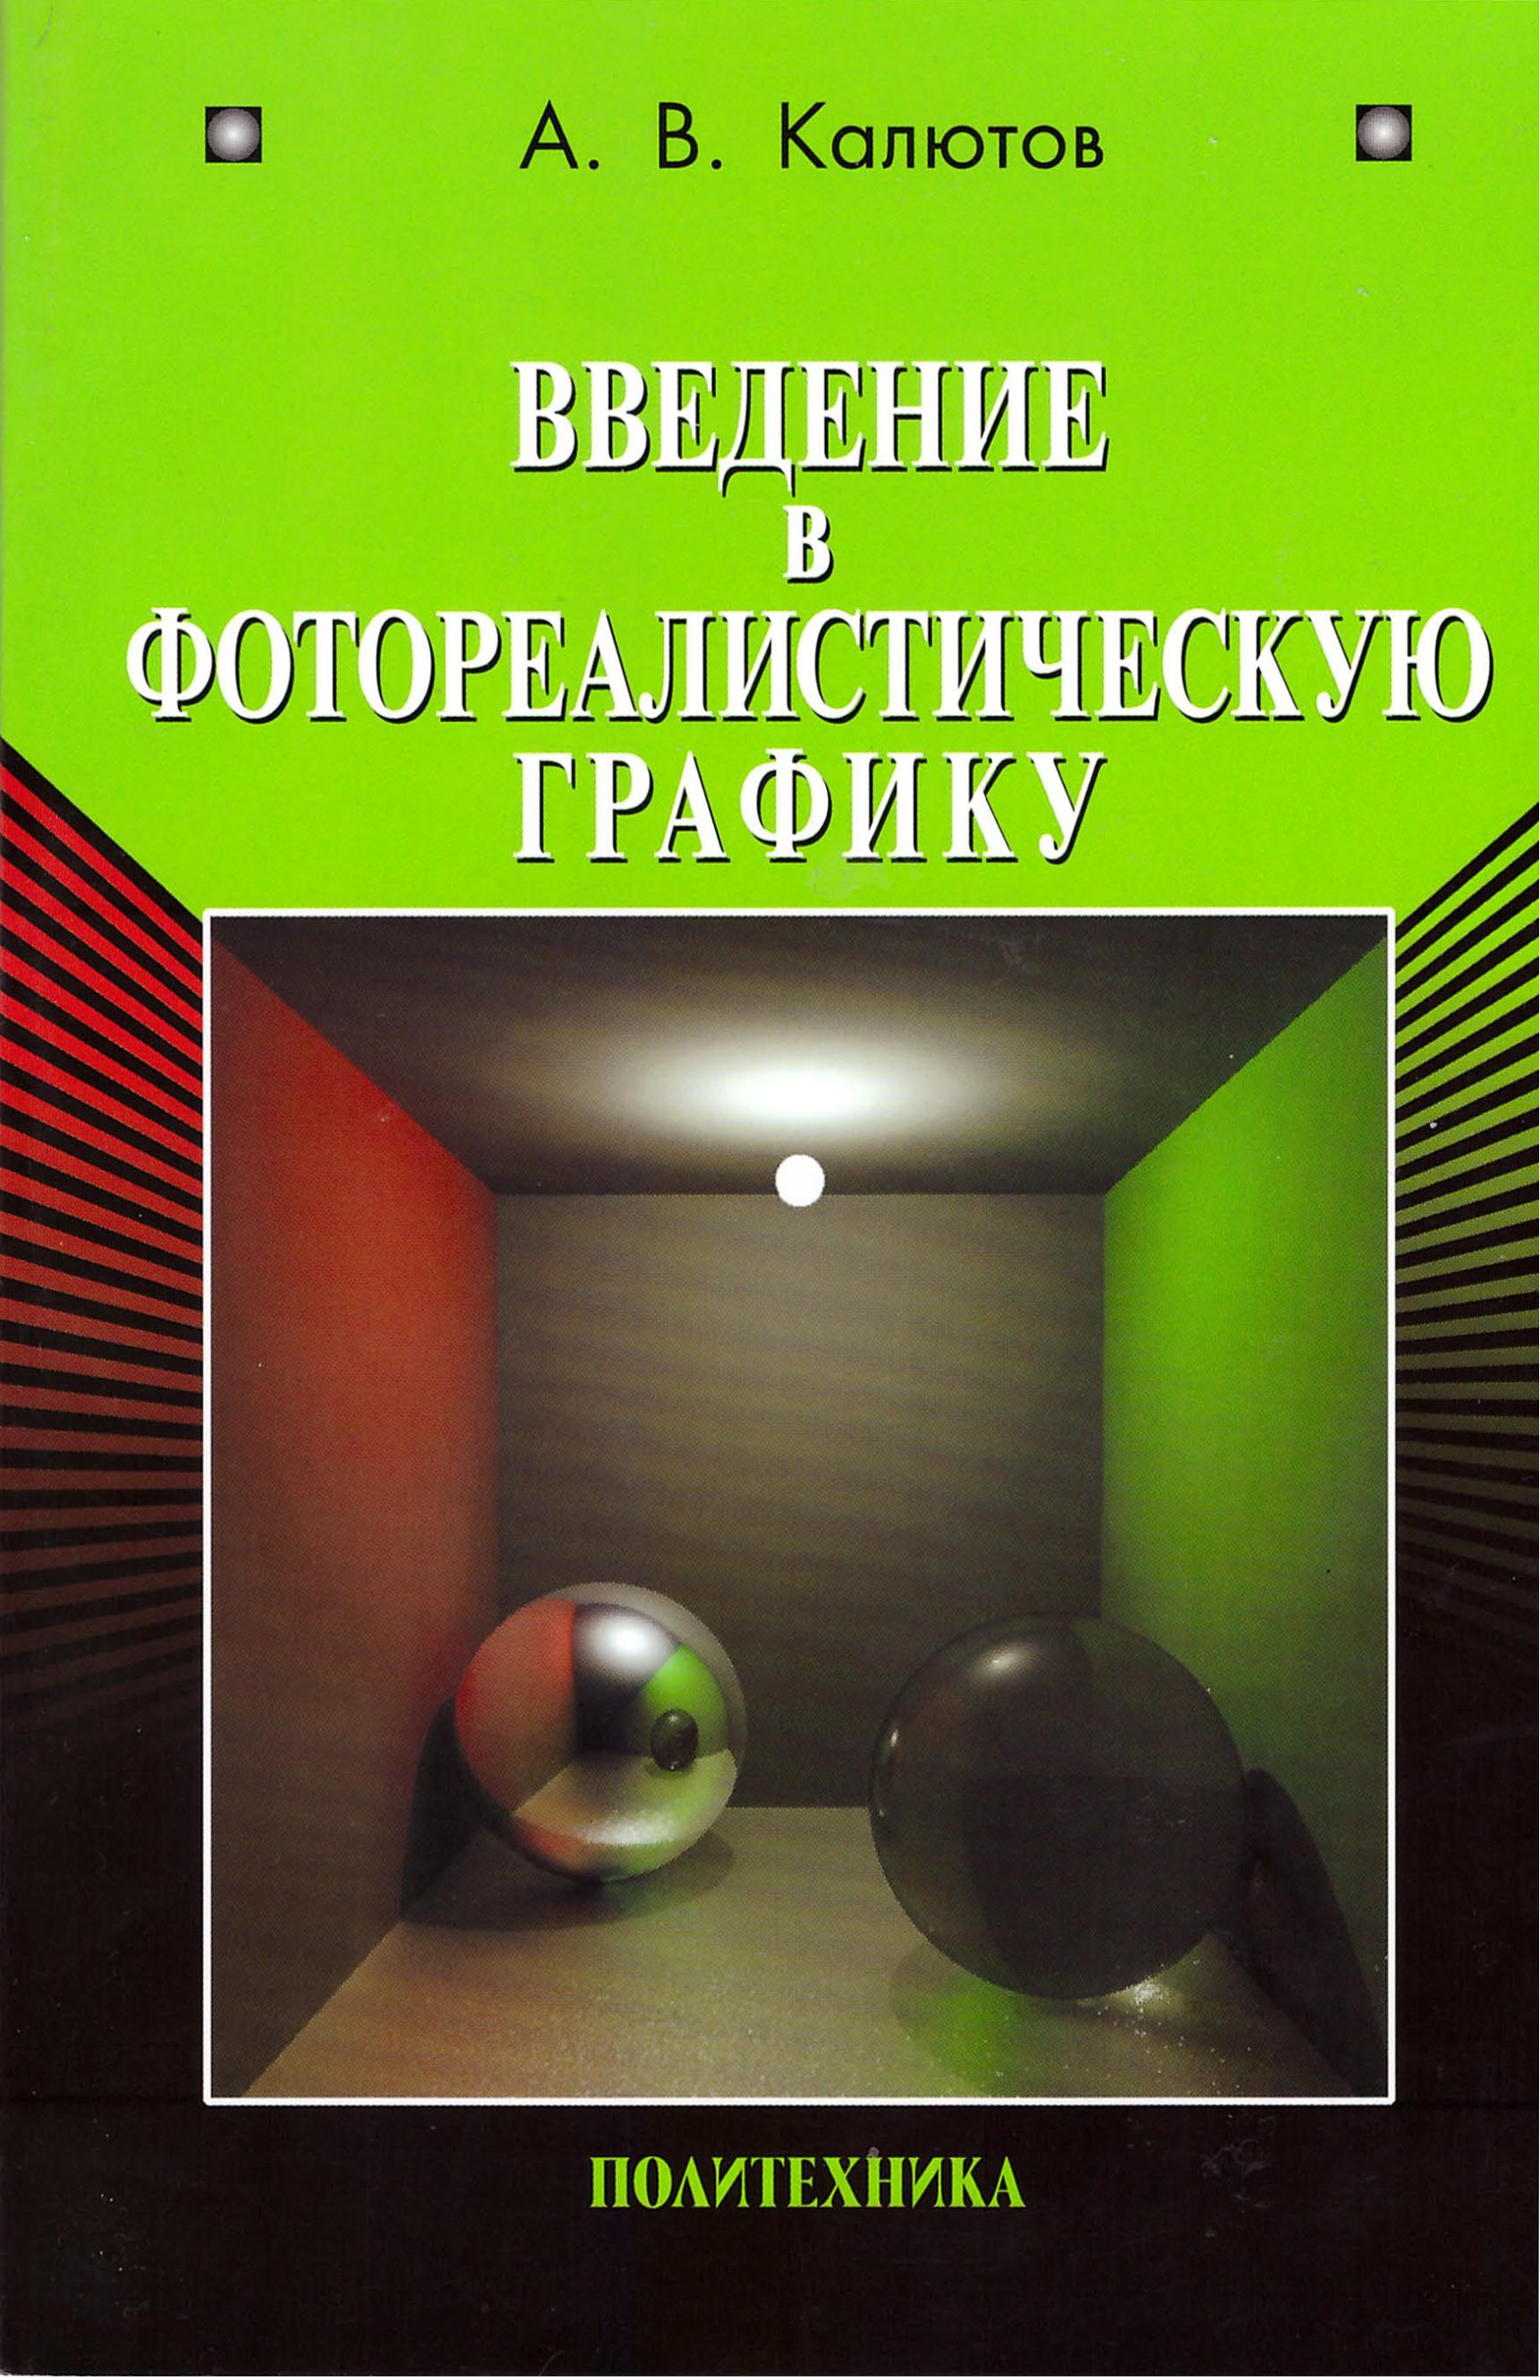 Книга  Введение в фотореалистическую графику созданная А. В. Калютов может относится к жанру программирование, программы, учебники и пособия для вузов. Стоимость электронной книги Введение в фотореалистическую графику с идентификатором 17072050 составляет 119.00 руб.